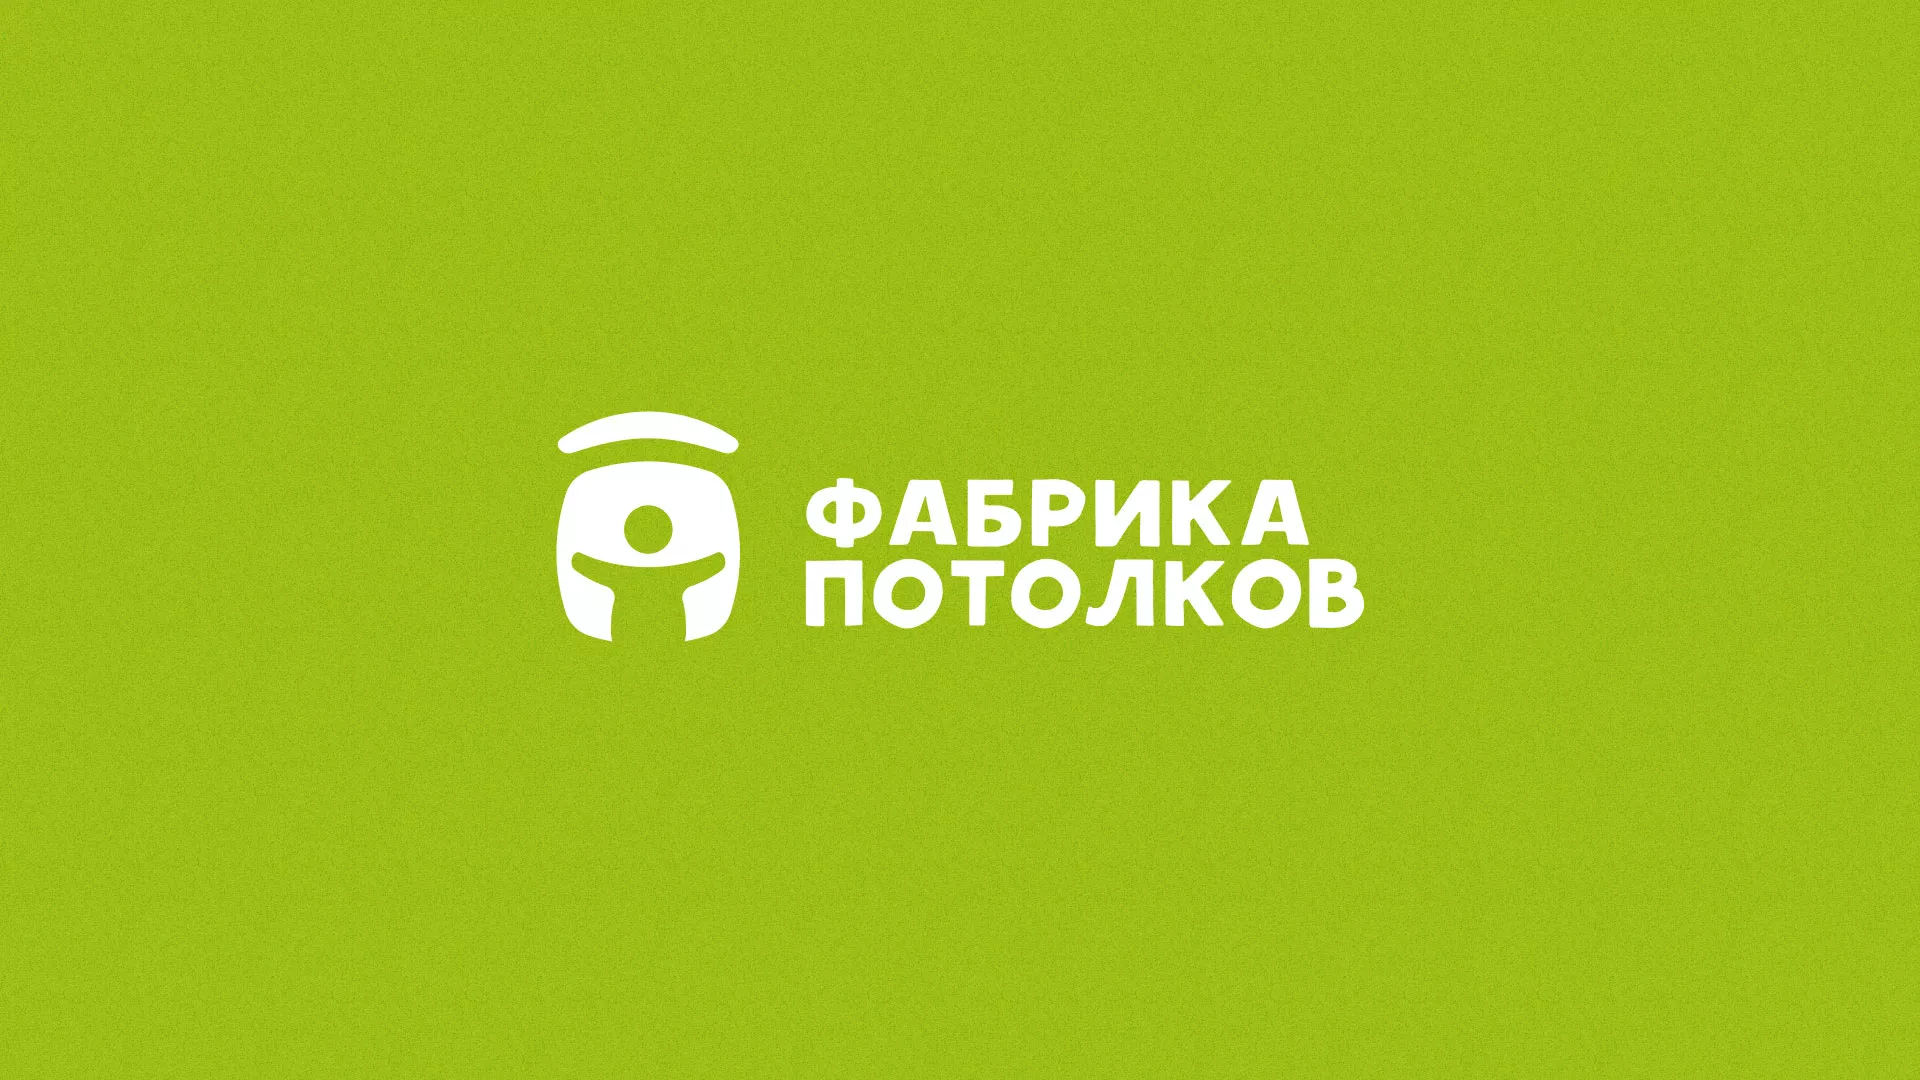 Разработка логотипа для производства натяжных потолков в Грязовце